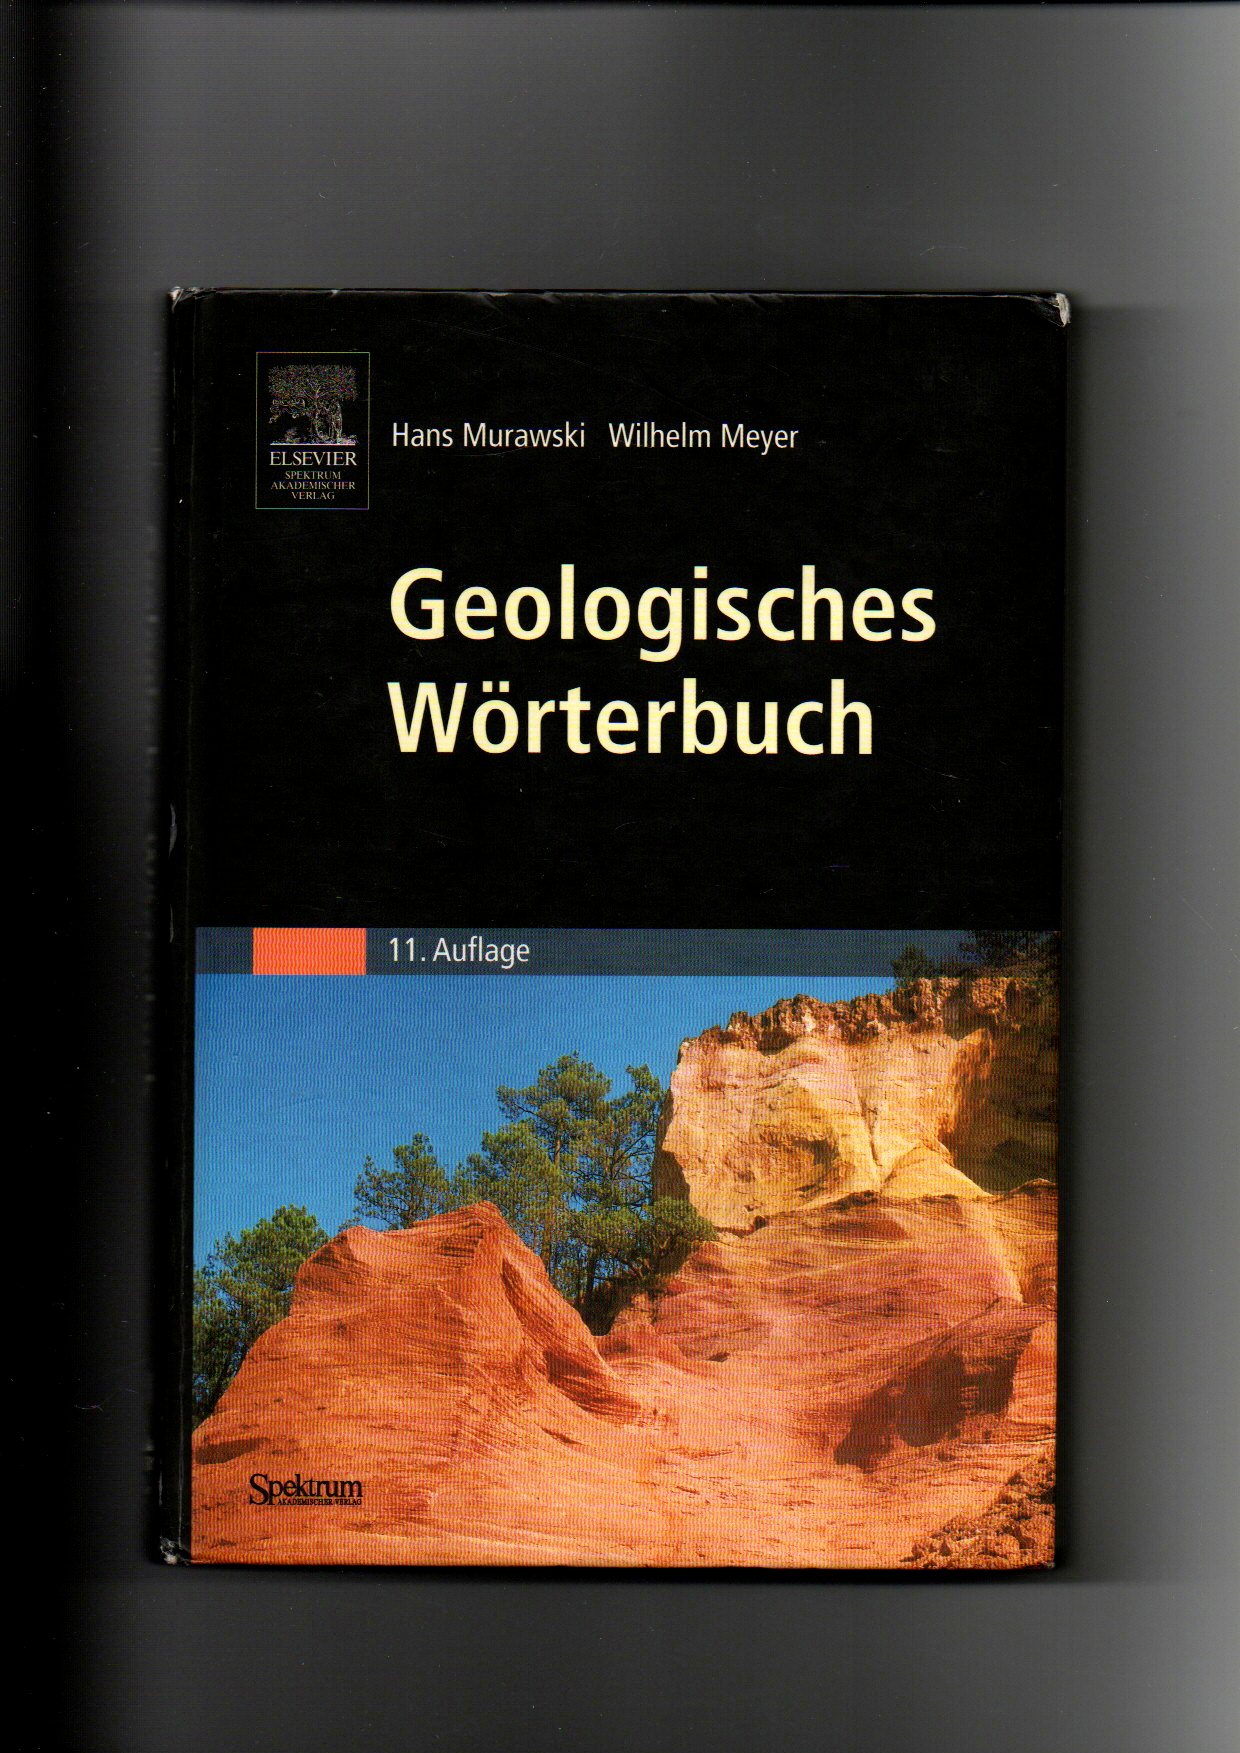 Hans Murawski, Wilhelm Meyer, Geologisches Wörterbuch  11. Auflage - Murawski, Hans und Wilhelm Meyer